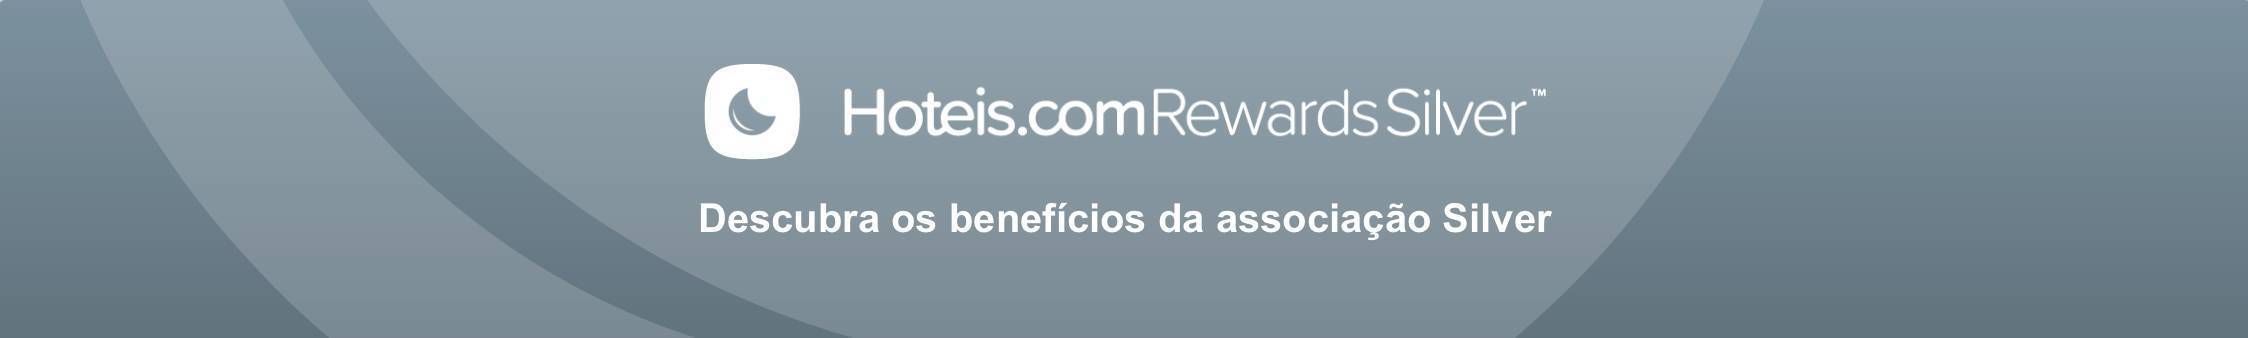 hoteis.com rewards silver